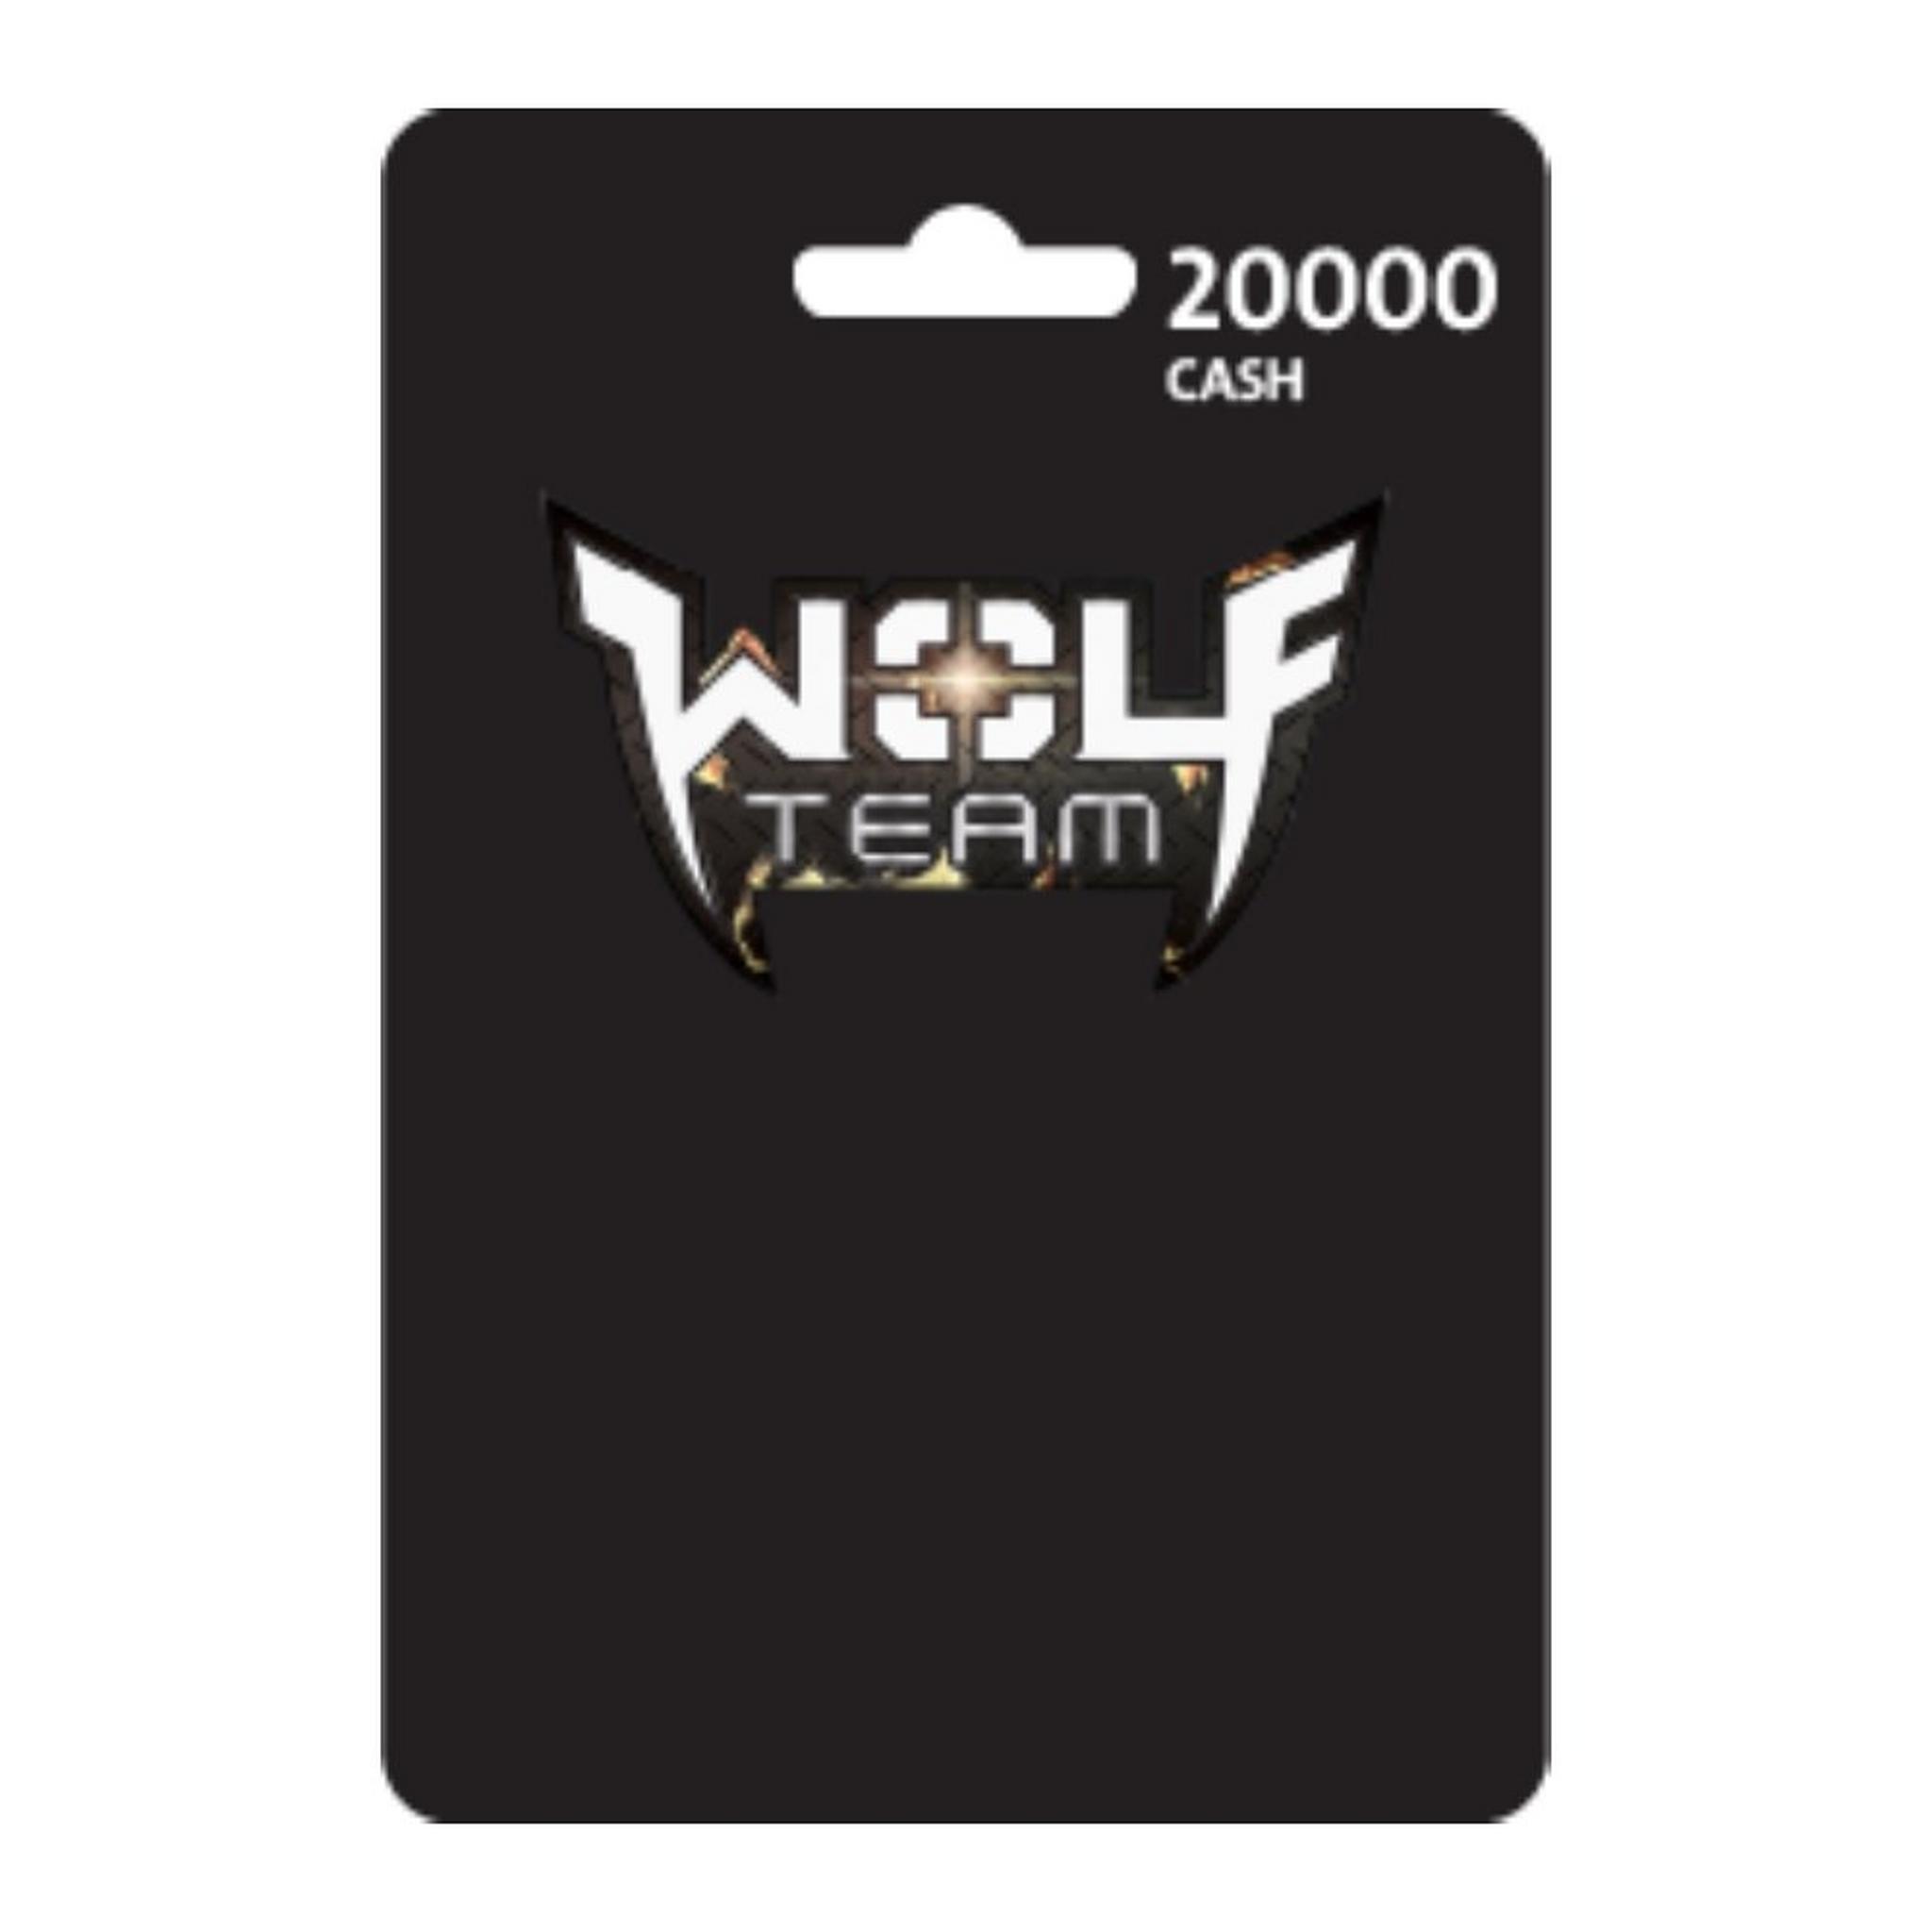 Wolfteam Mena 20000 Cash